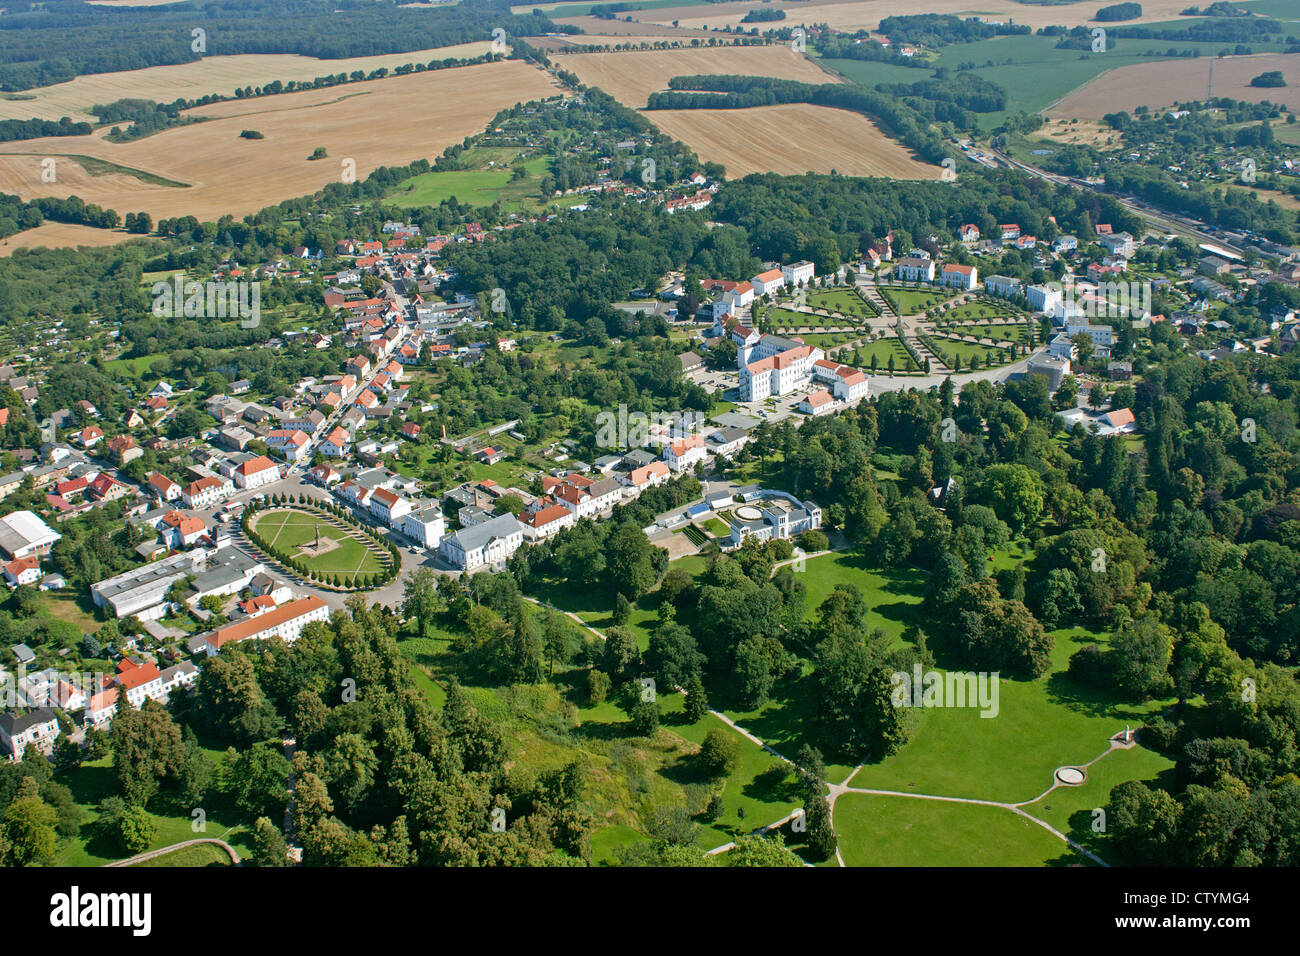 Luftbild des Marktplatzes und Zirkus, Putbus, Insel Rügen, Ostseeküste, Mecklenburg-West Pomerania, Deutschland Stockfoto